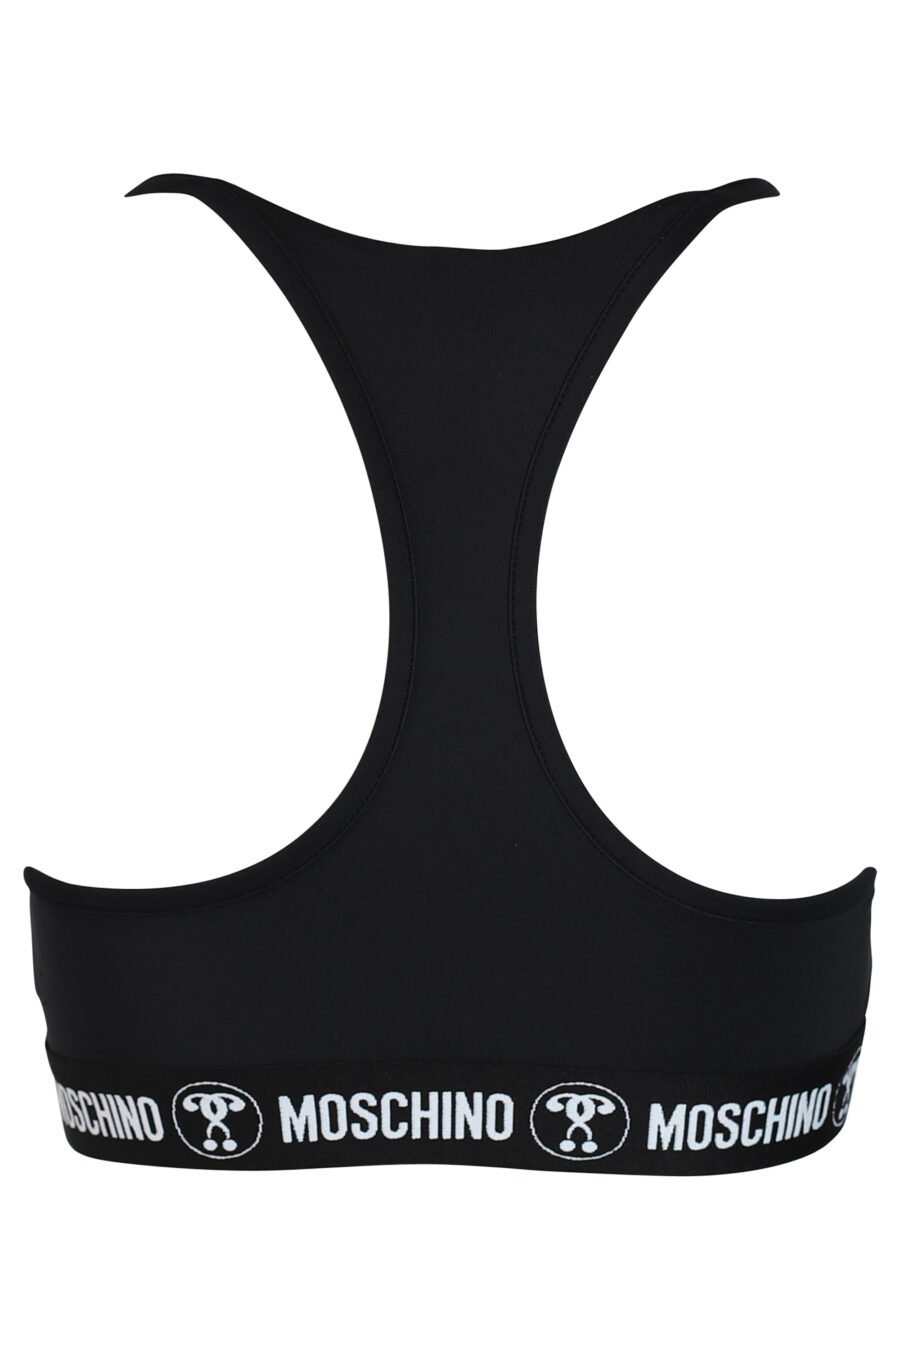 Moschino Black Logo Bra Moschino